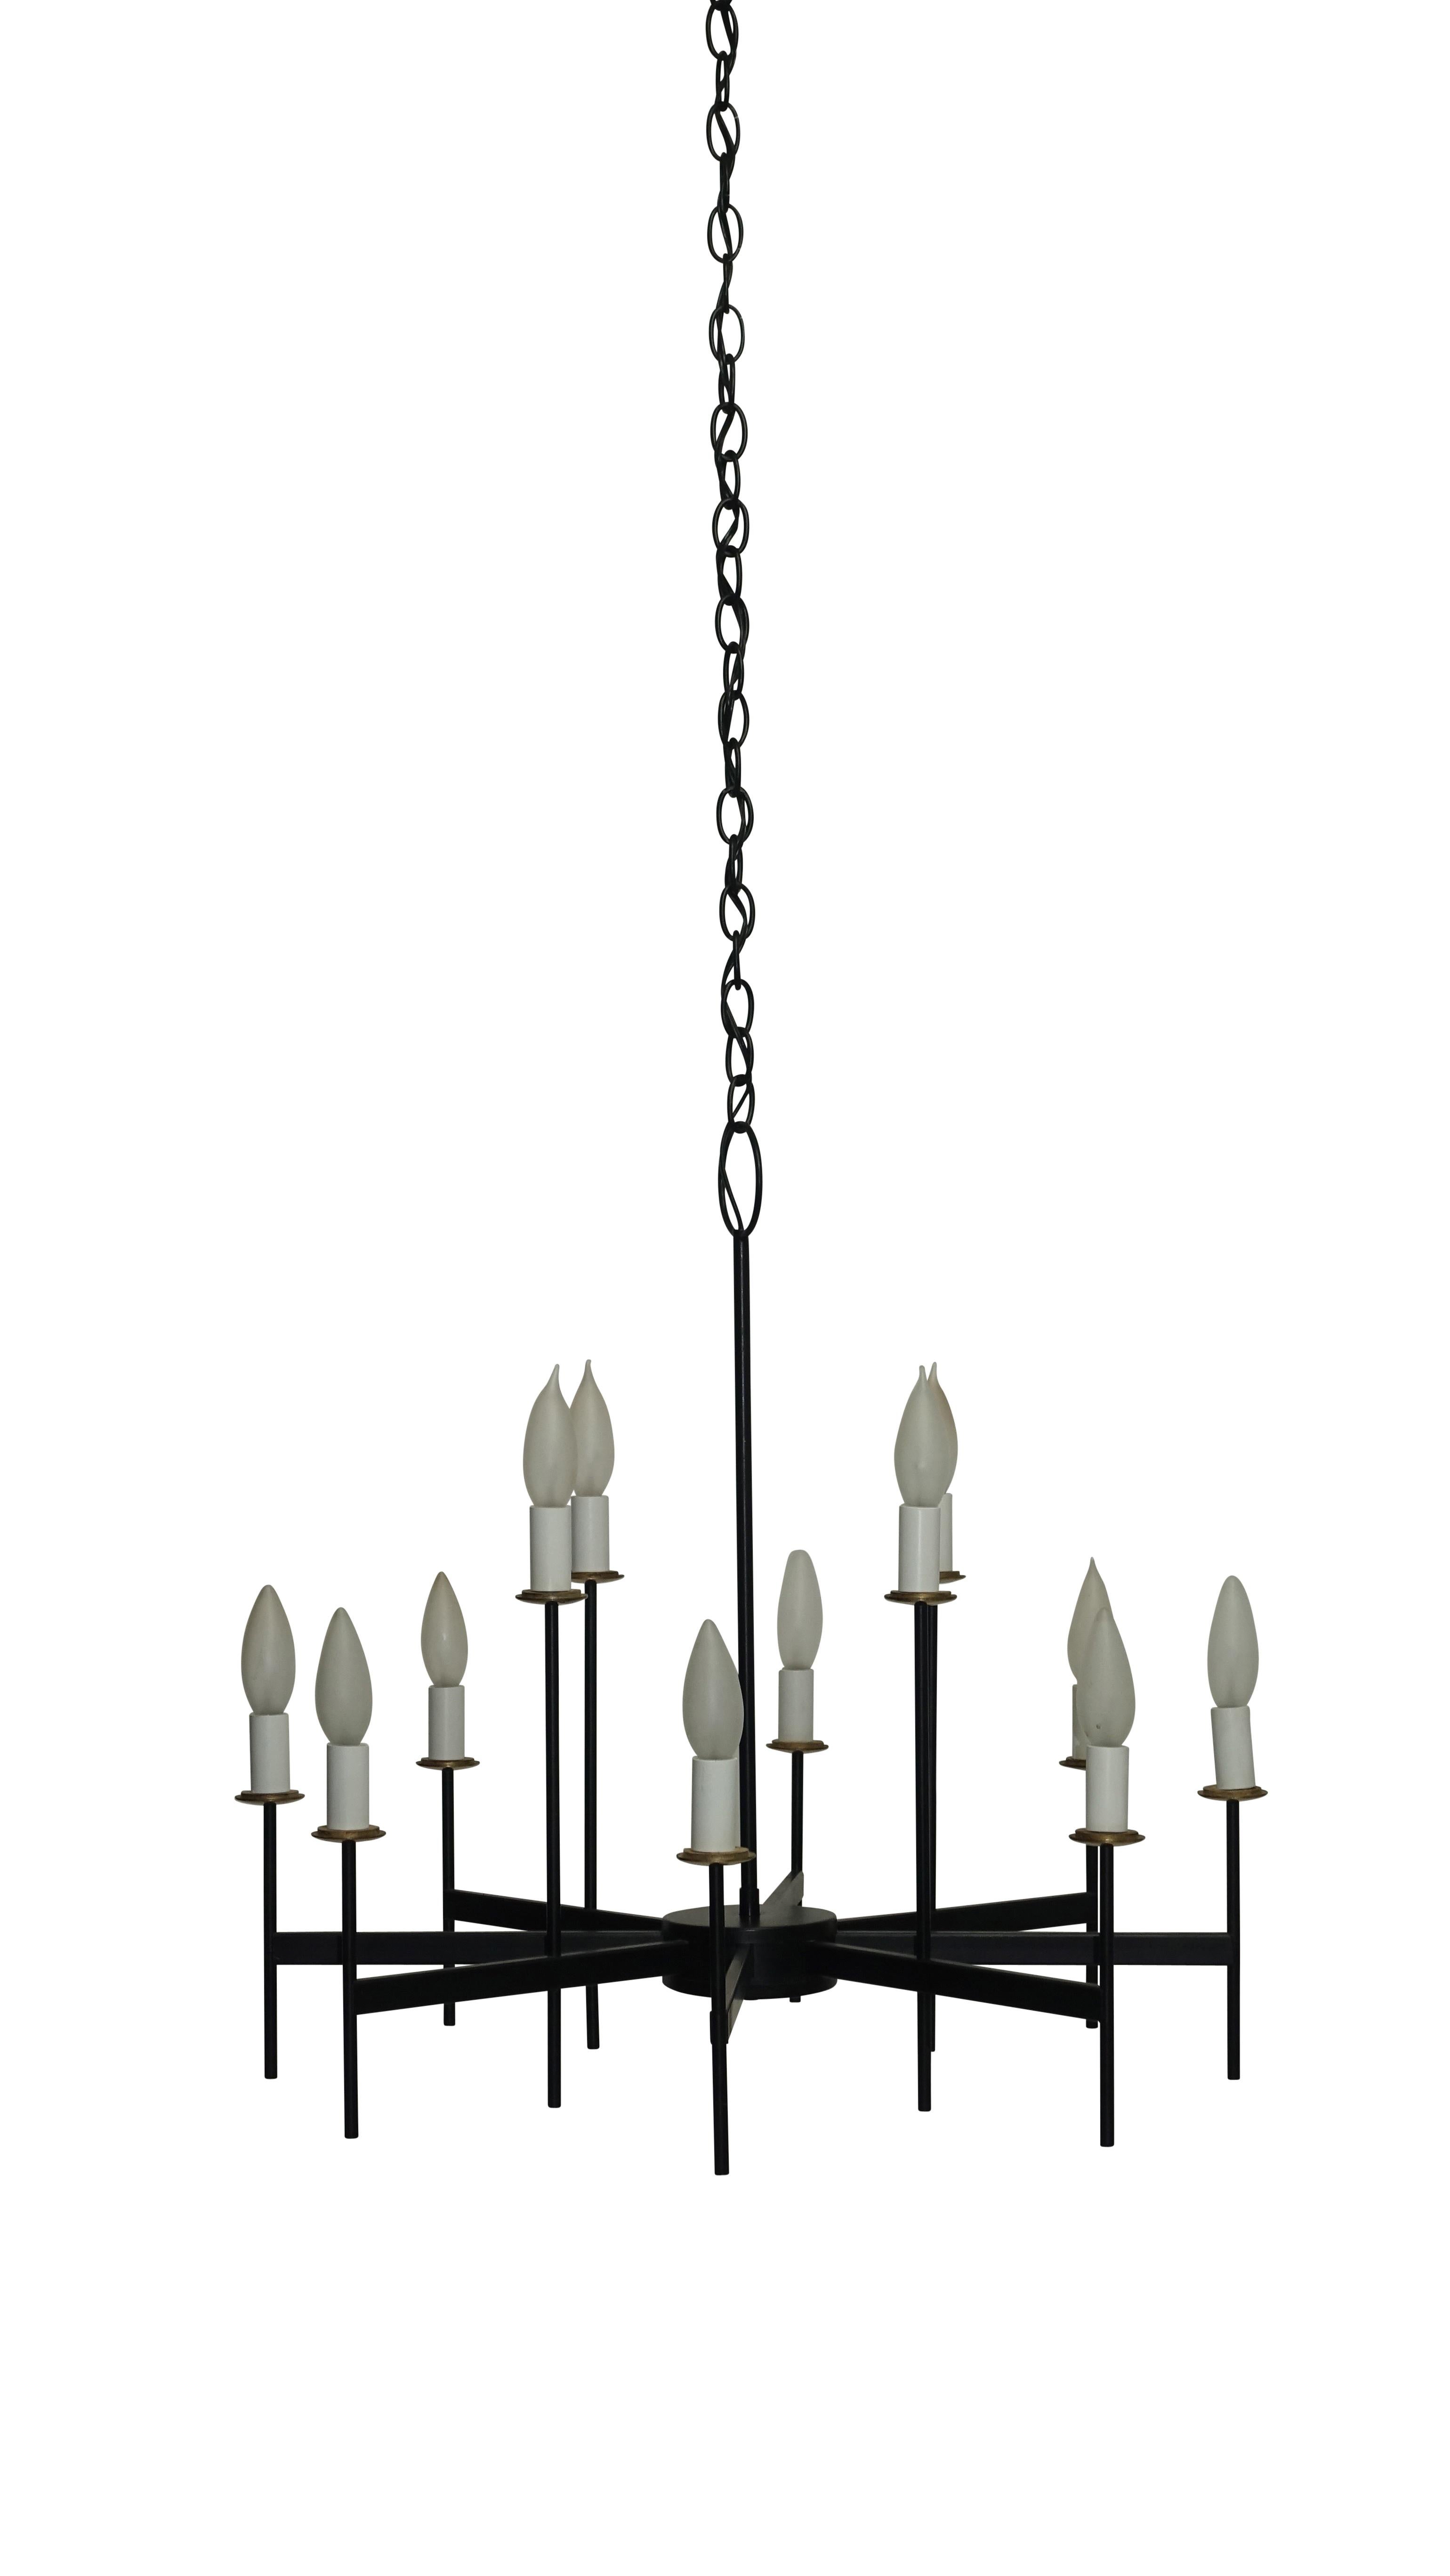 Luminaire à douze bras en fer noir et laiton. Récemment recâblé, il contient des ampoules de la taille d'un lustre. Américain, milieu du XXe siècle.